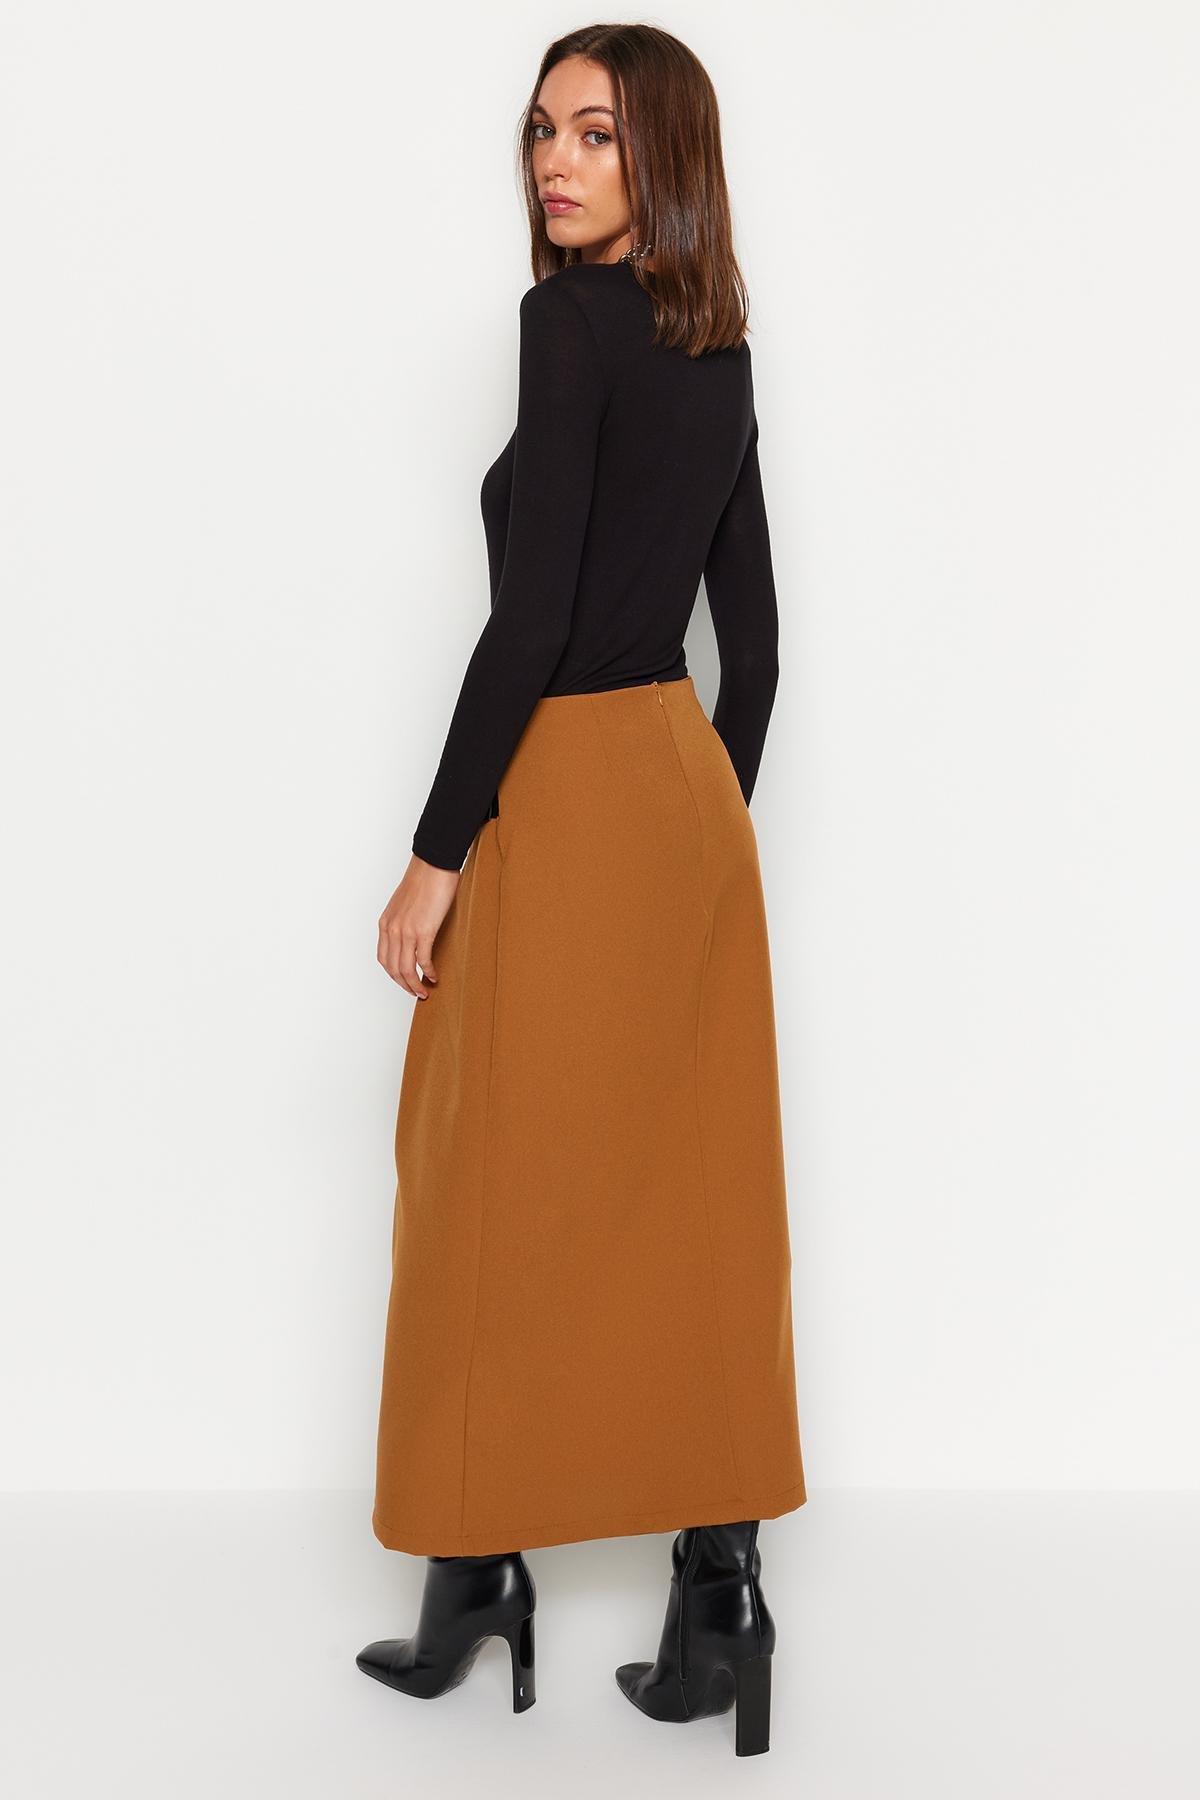 Trendyol - Brown Detailed Woven Skirt